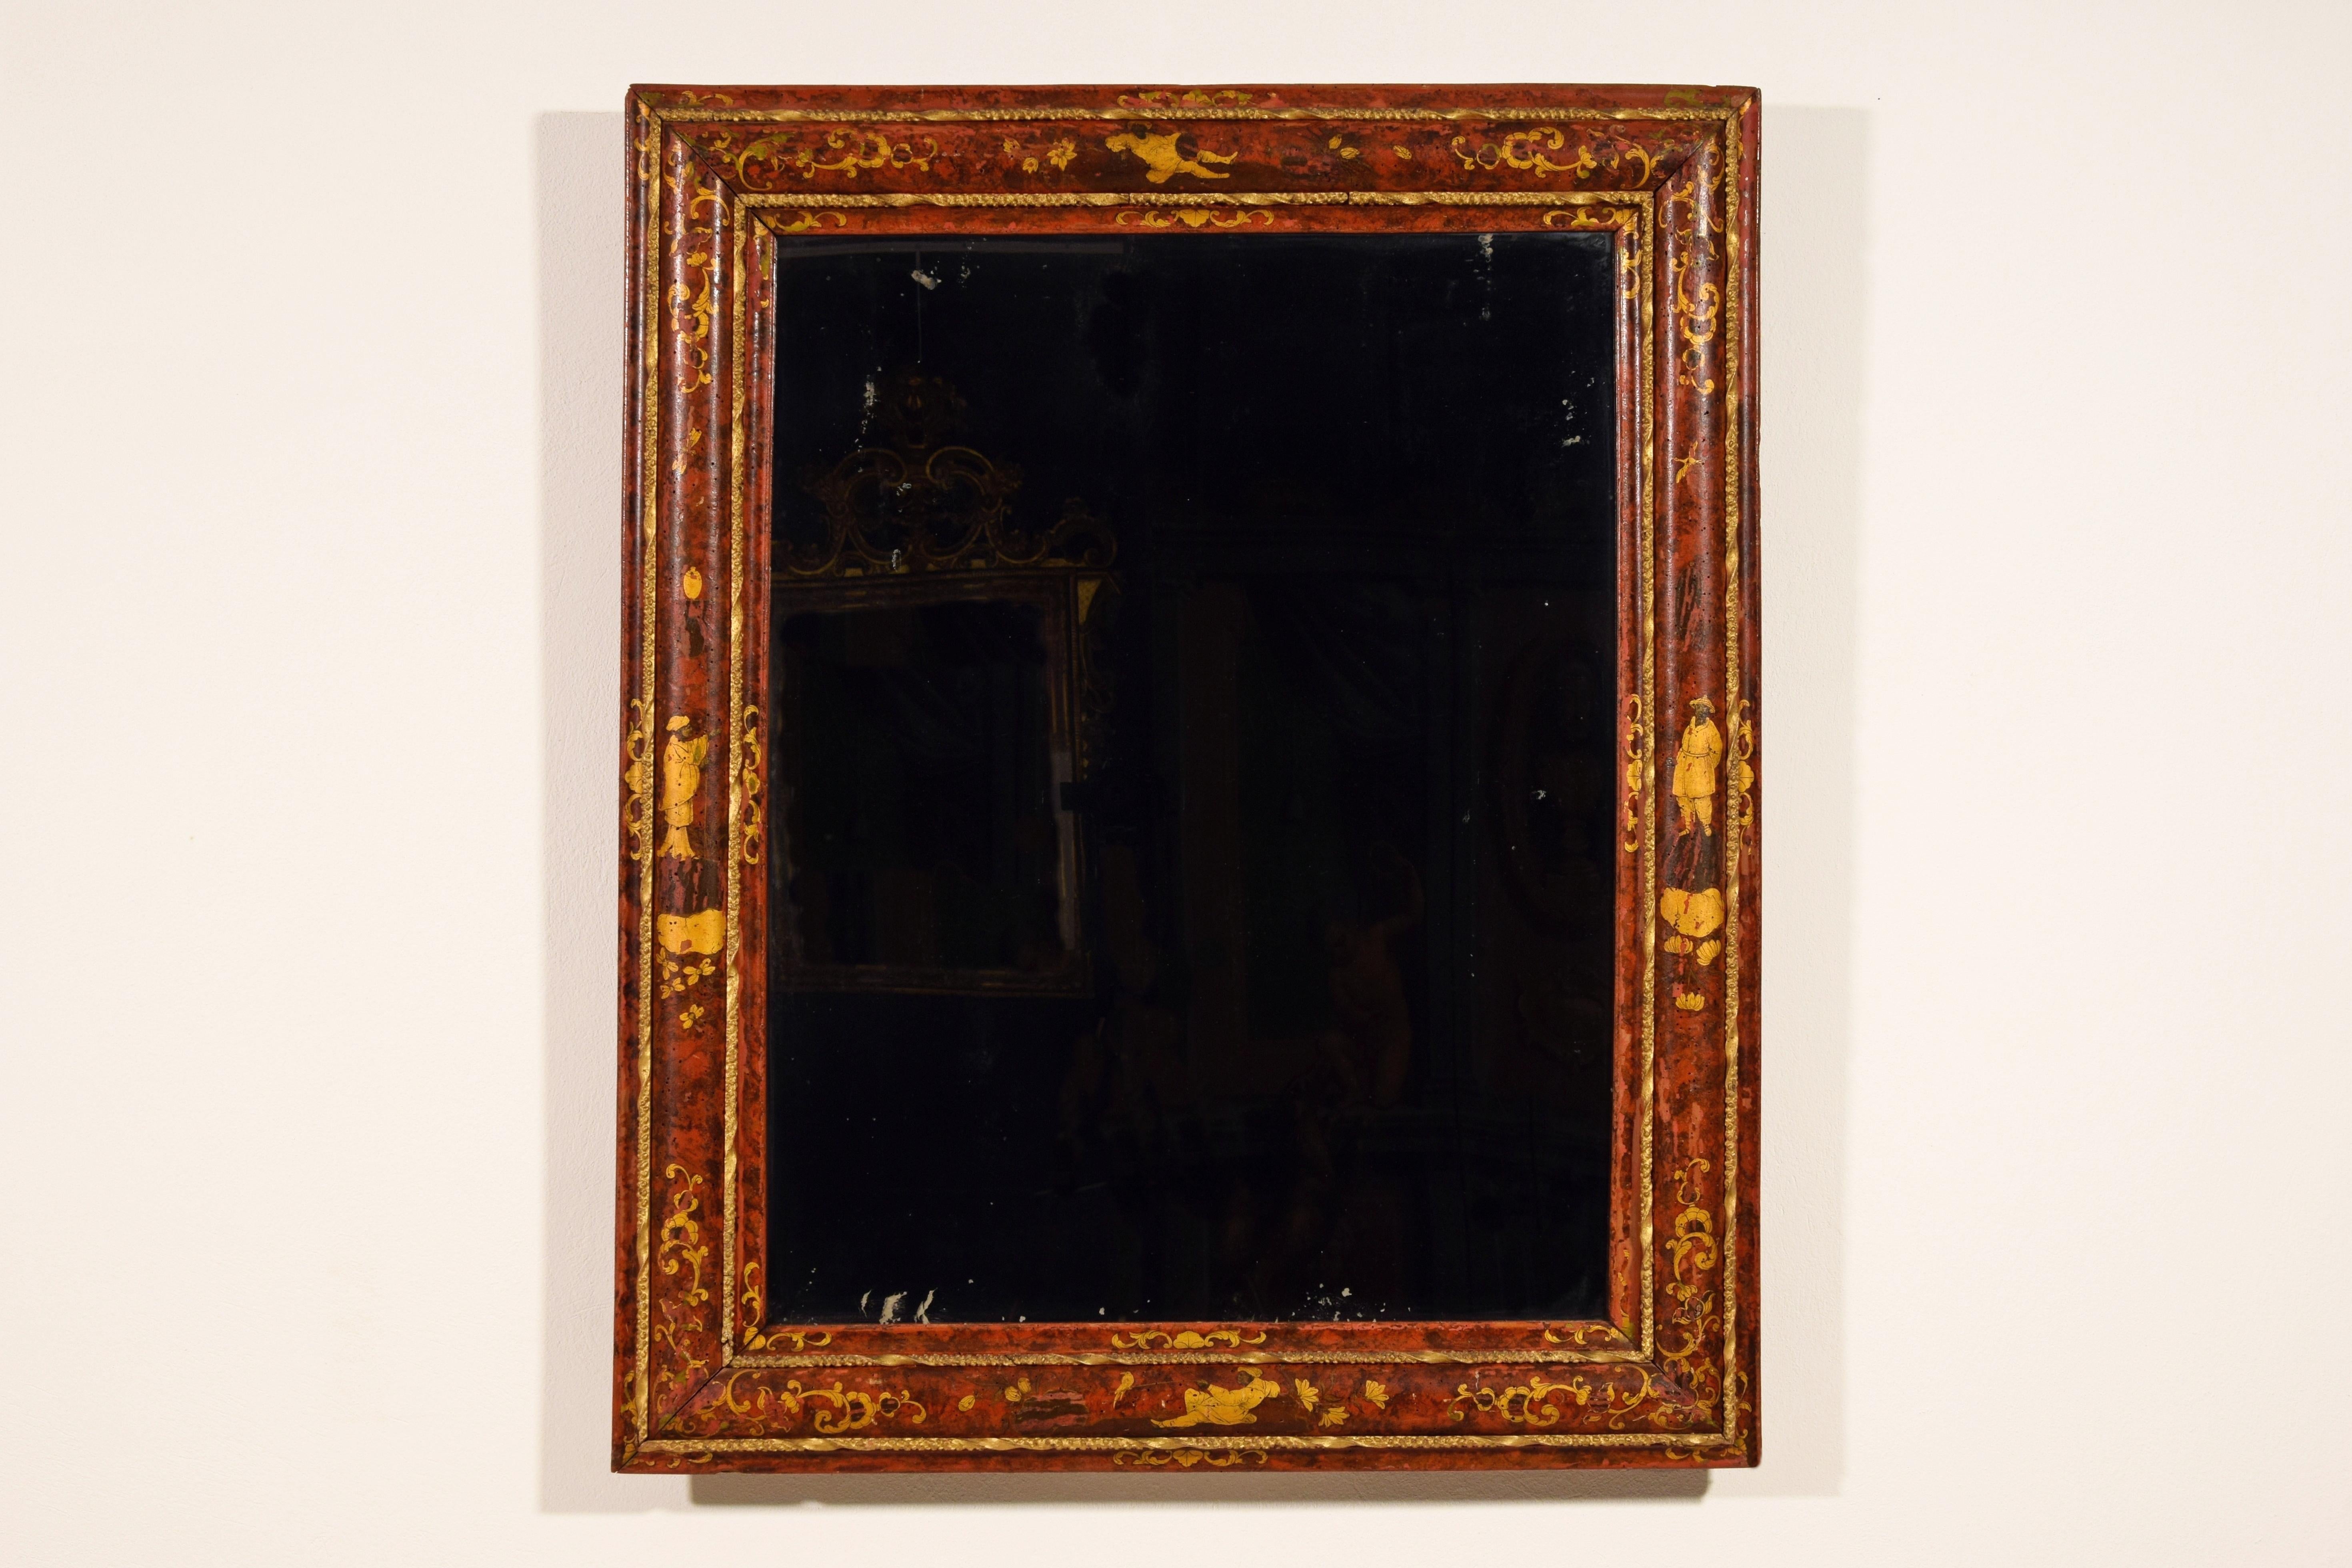 18. Jahrhundert, Spiegel aus venezianischem Holz, lackiert mit Chinoiserie

Dieser bedeutende Spiegel wurde im 18. Jahrhundert in Venedig, Italien, hergestellt. Ganz in Polychromie und Gold lackiert, mit Themen zur Chinoiserie, ist das Werk des